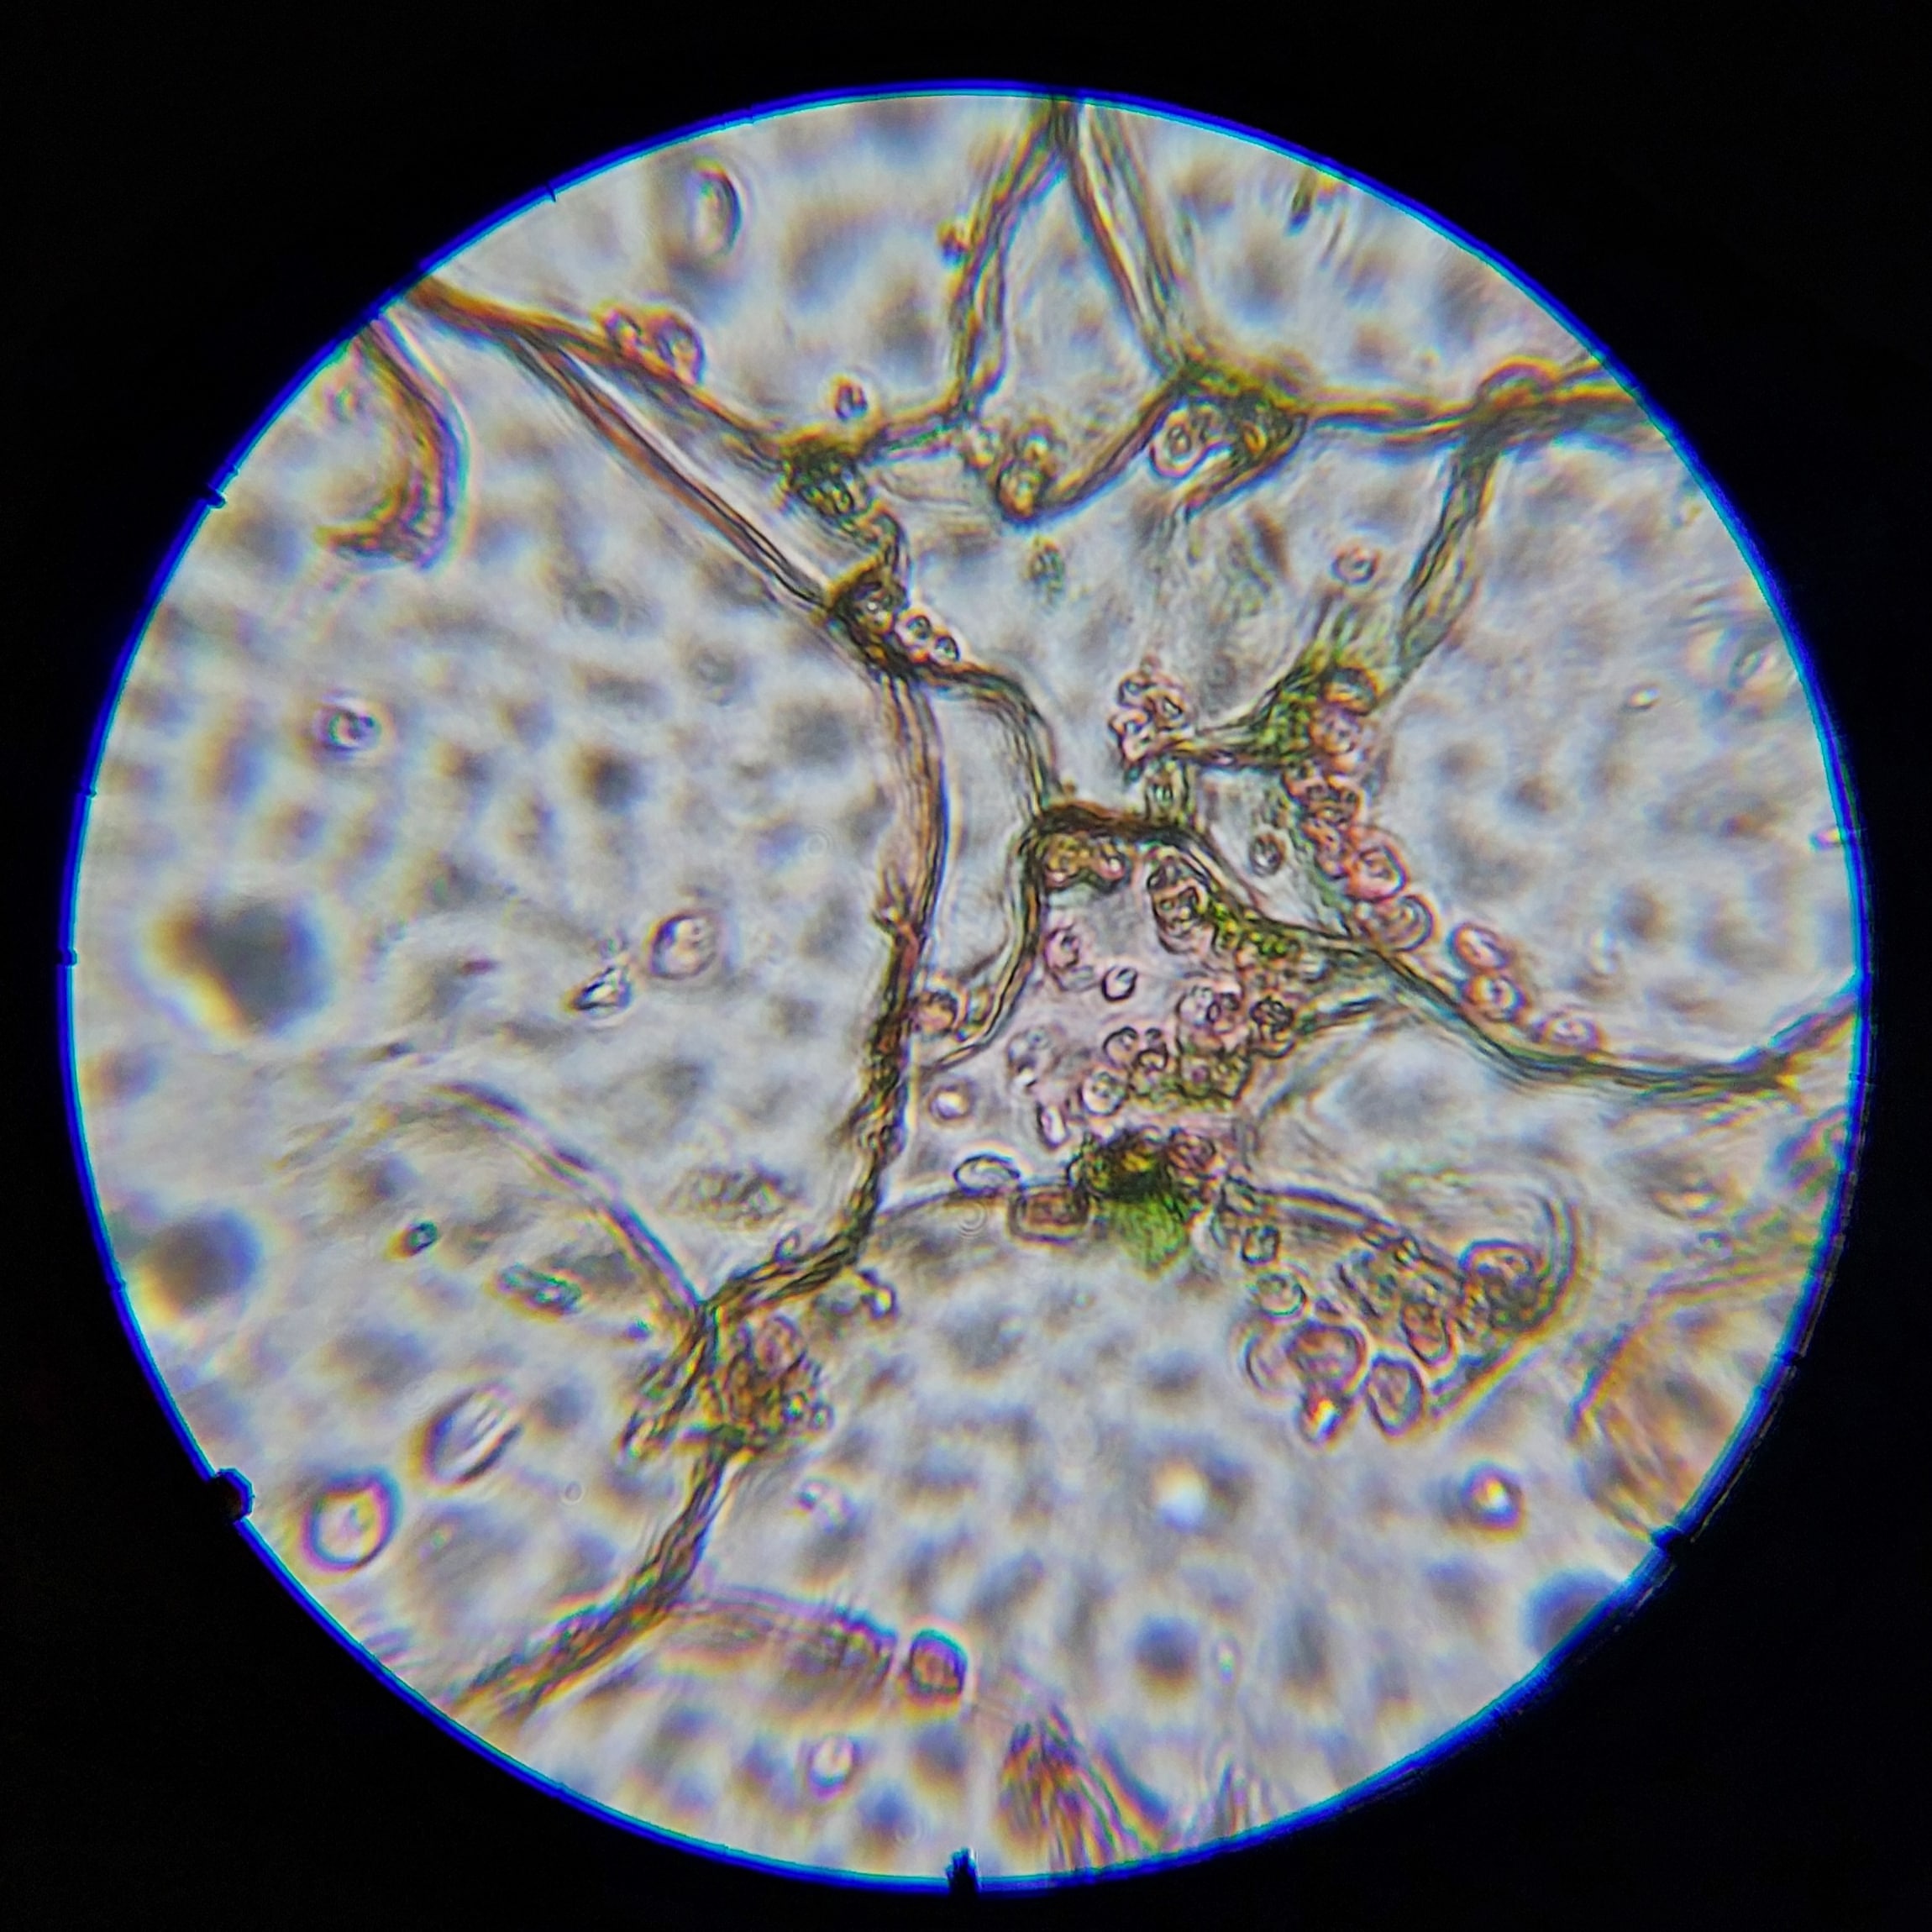 Микроскоп школьный Микромед Эврика SMART 40x-1280x в текстильном кейсе